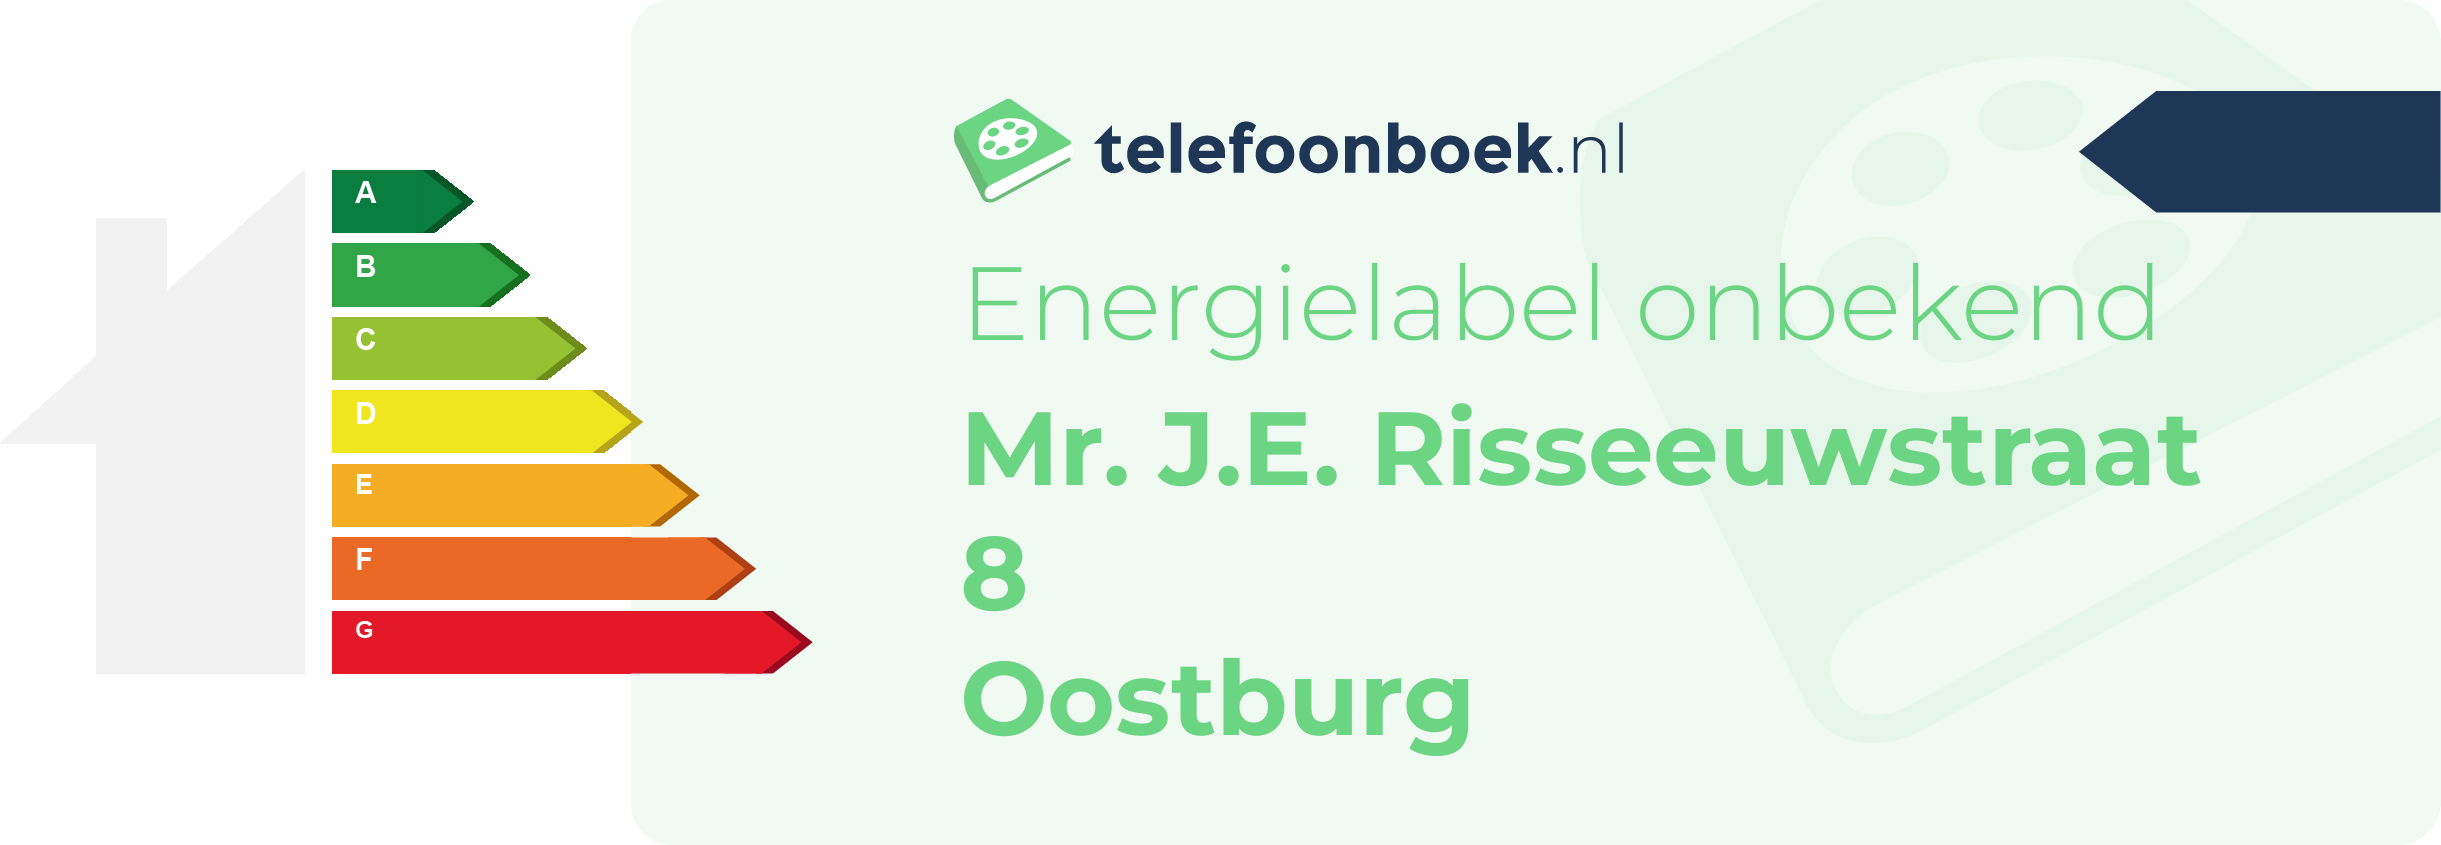 Energielabel Mr. J.E. Risseeuwstraat 8 Oostburg